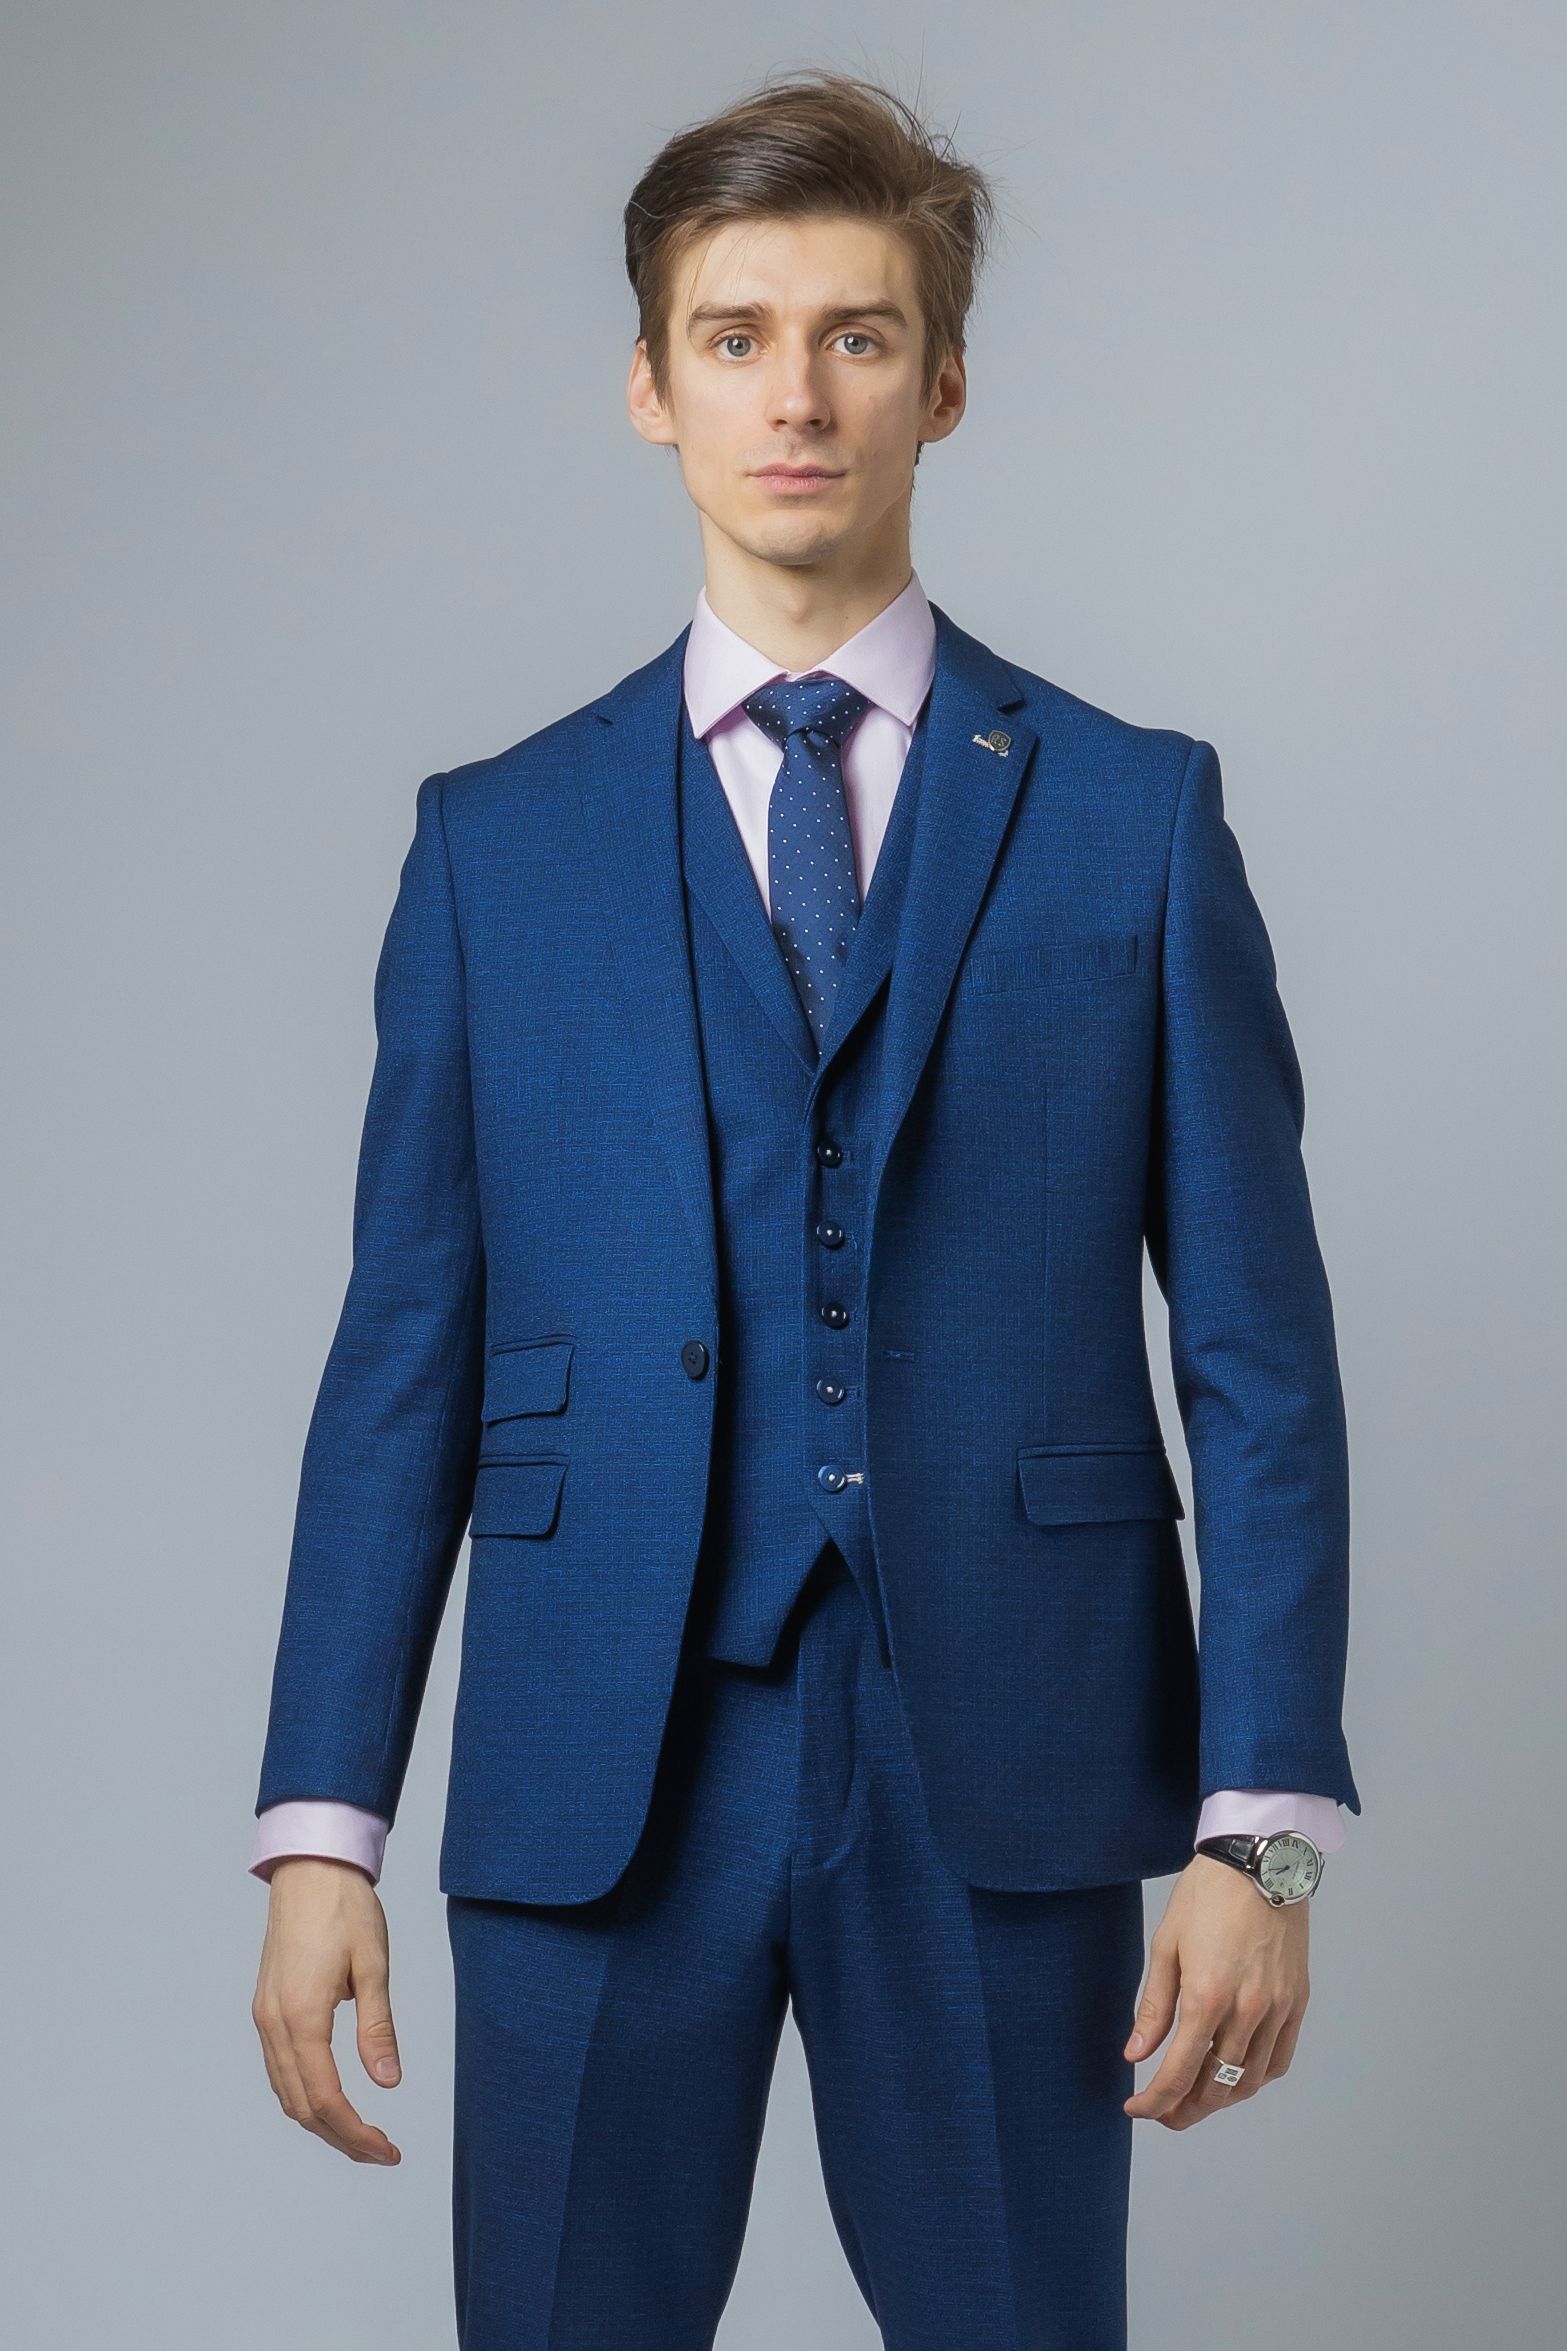 Men's Slim Fit Blue Suit Jacket - MATEO